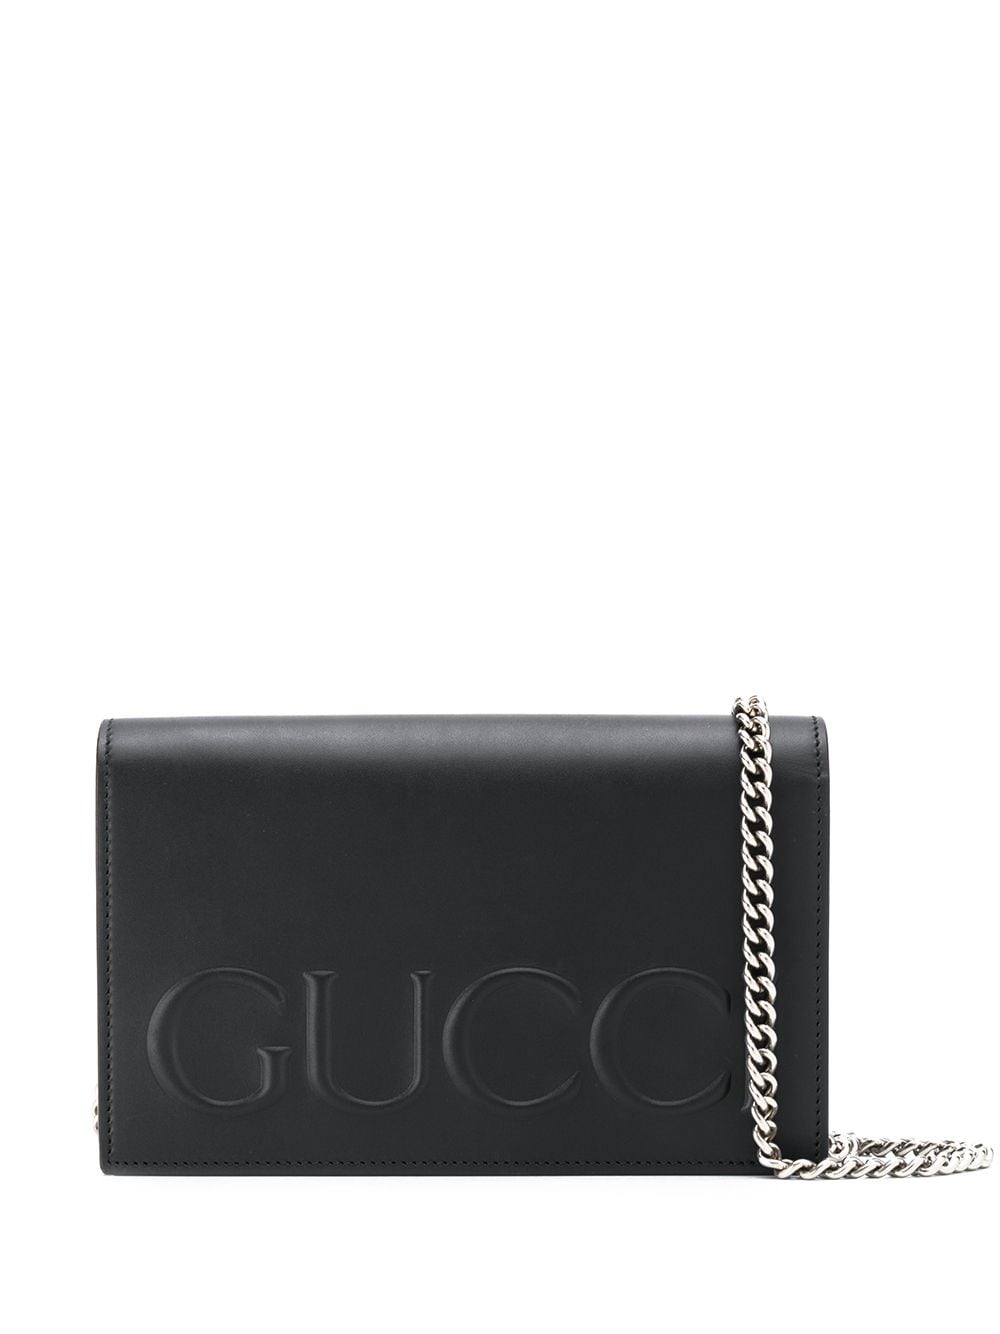 фото Gucci сумка через плечо с логотипом